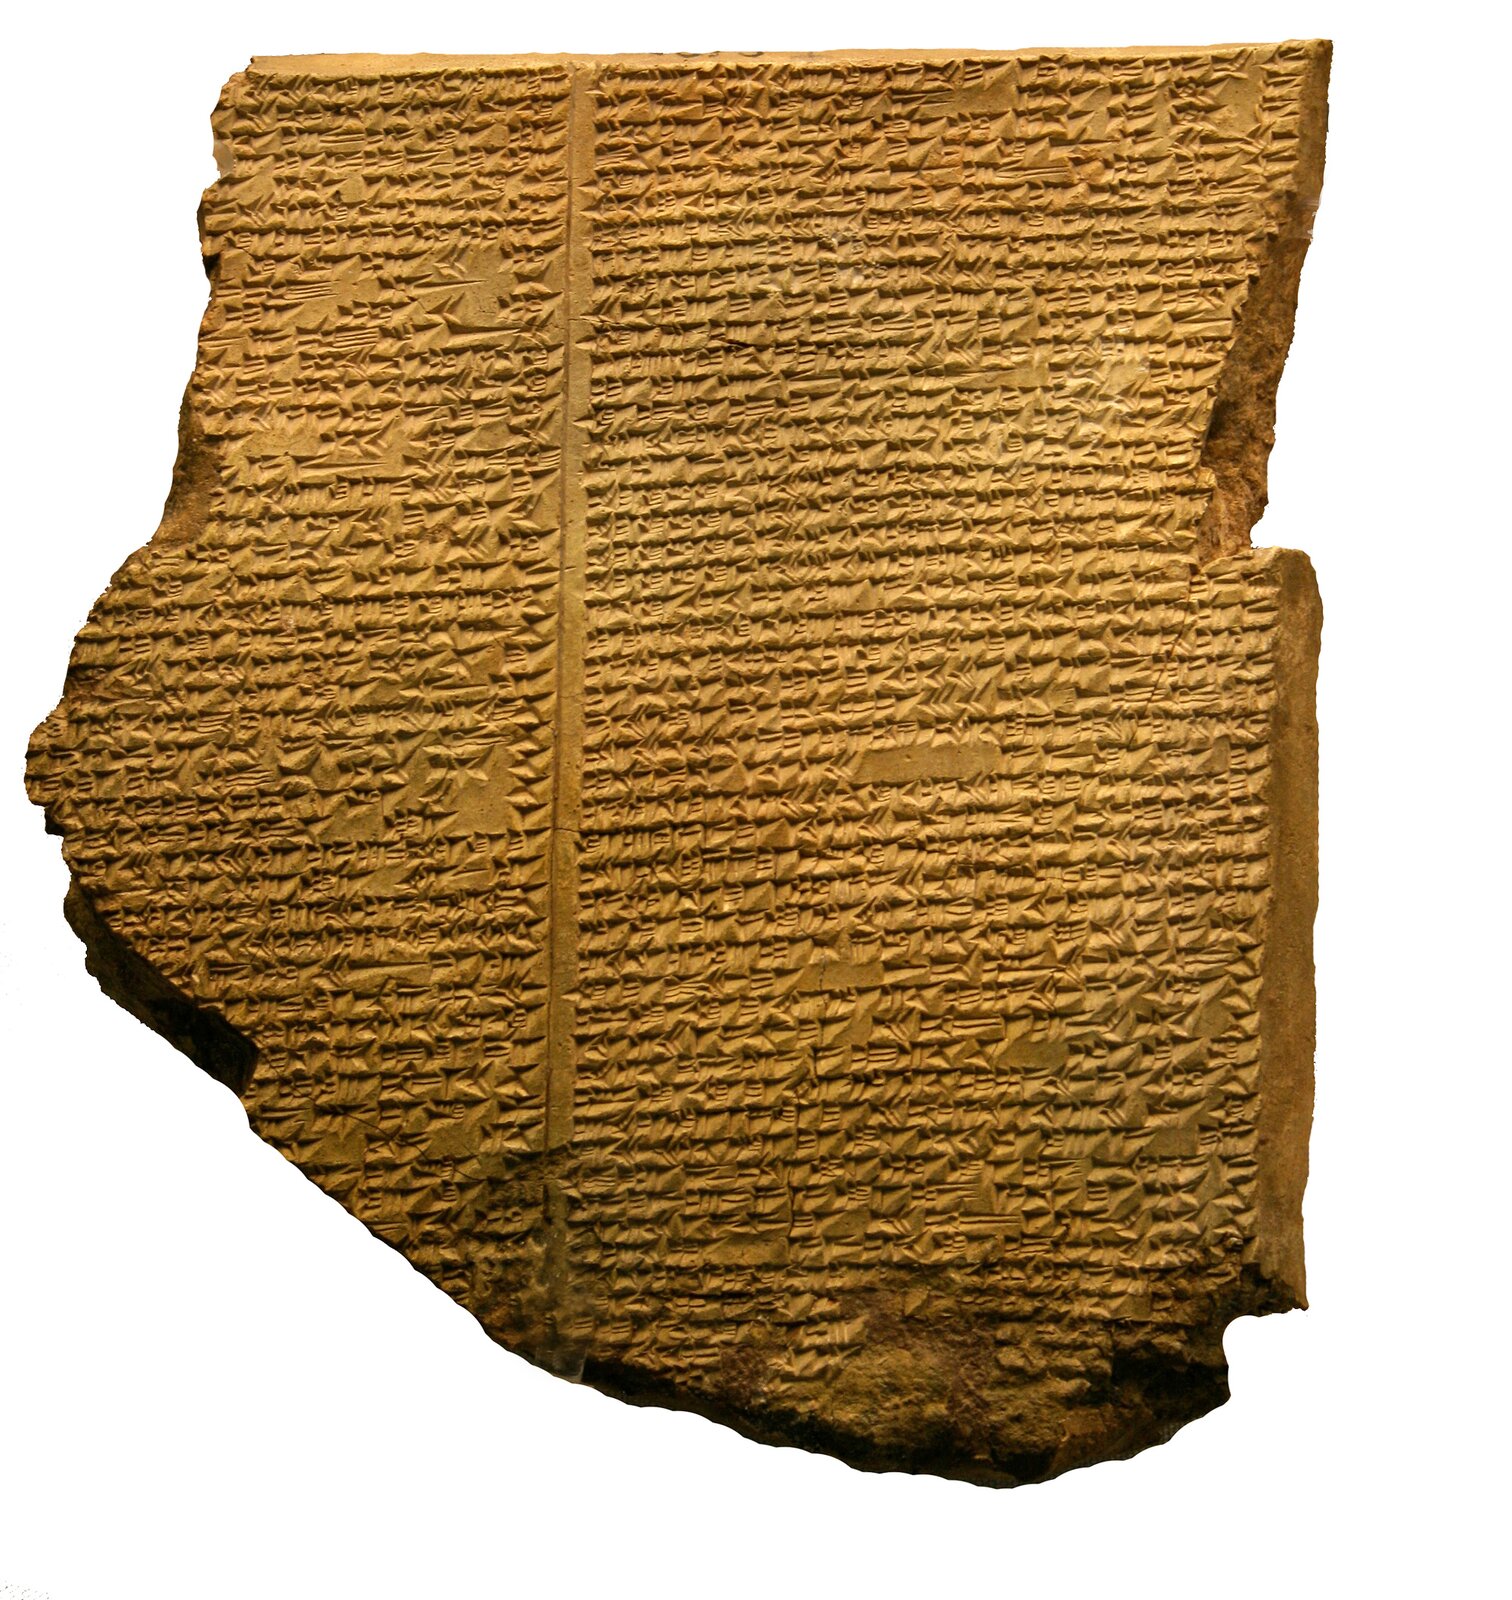 Odnaleziona pod koniec XIX w. tabliczka Eposu o Gilgameszu zawierająca opis potopu (zbiory British Museum) Odnaleziona pod koniec XIX w. tabliczka Eposu o Gilgameszu zawierająca opis potopu (zbiory British Museum) Źródło: Mike Peel, licencja: CC BY-SA 4.0.